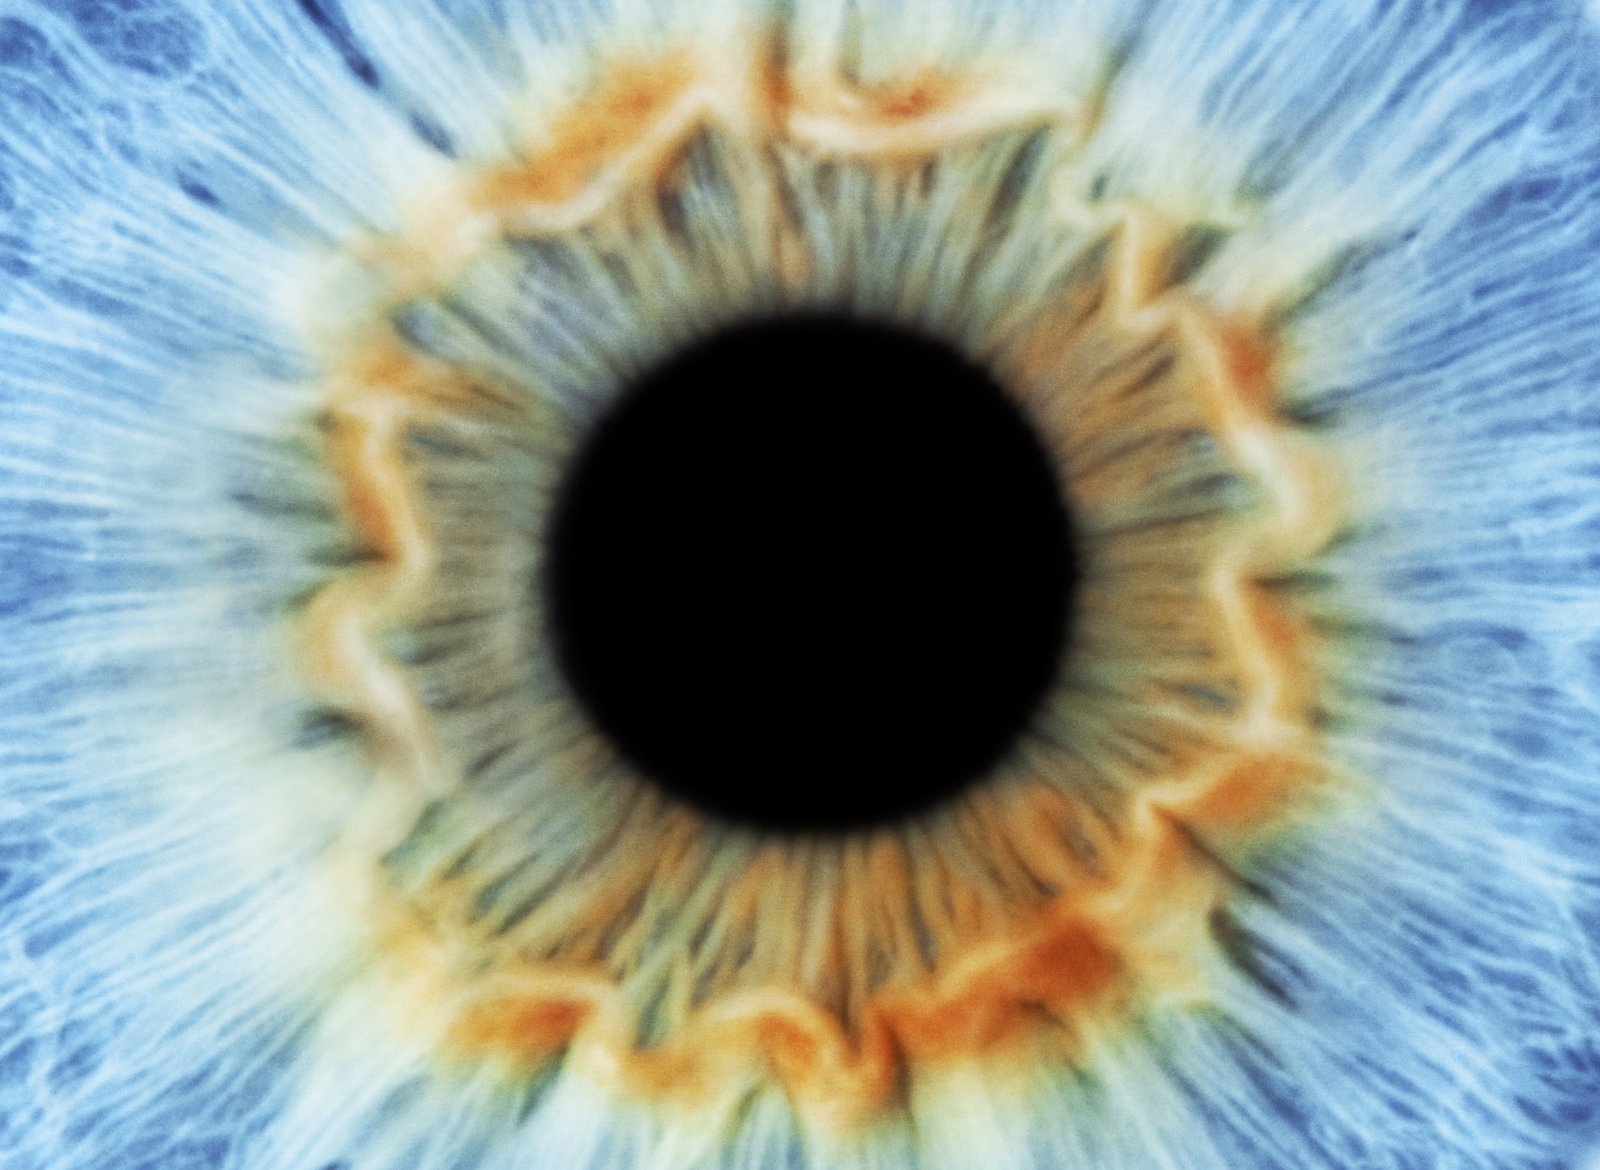 Artificial iris responds to light like real eyes | DeviceDaily.com